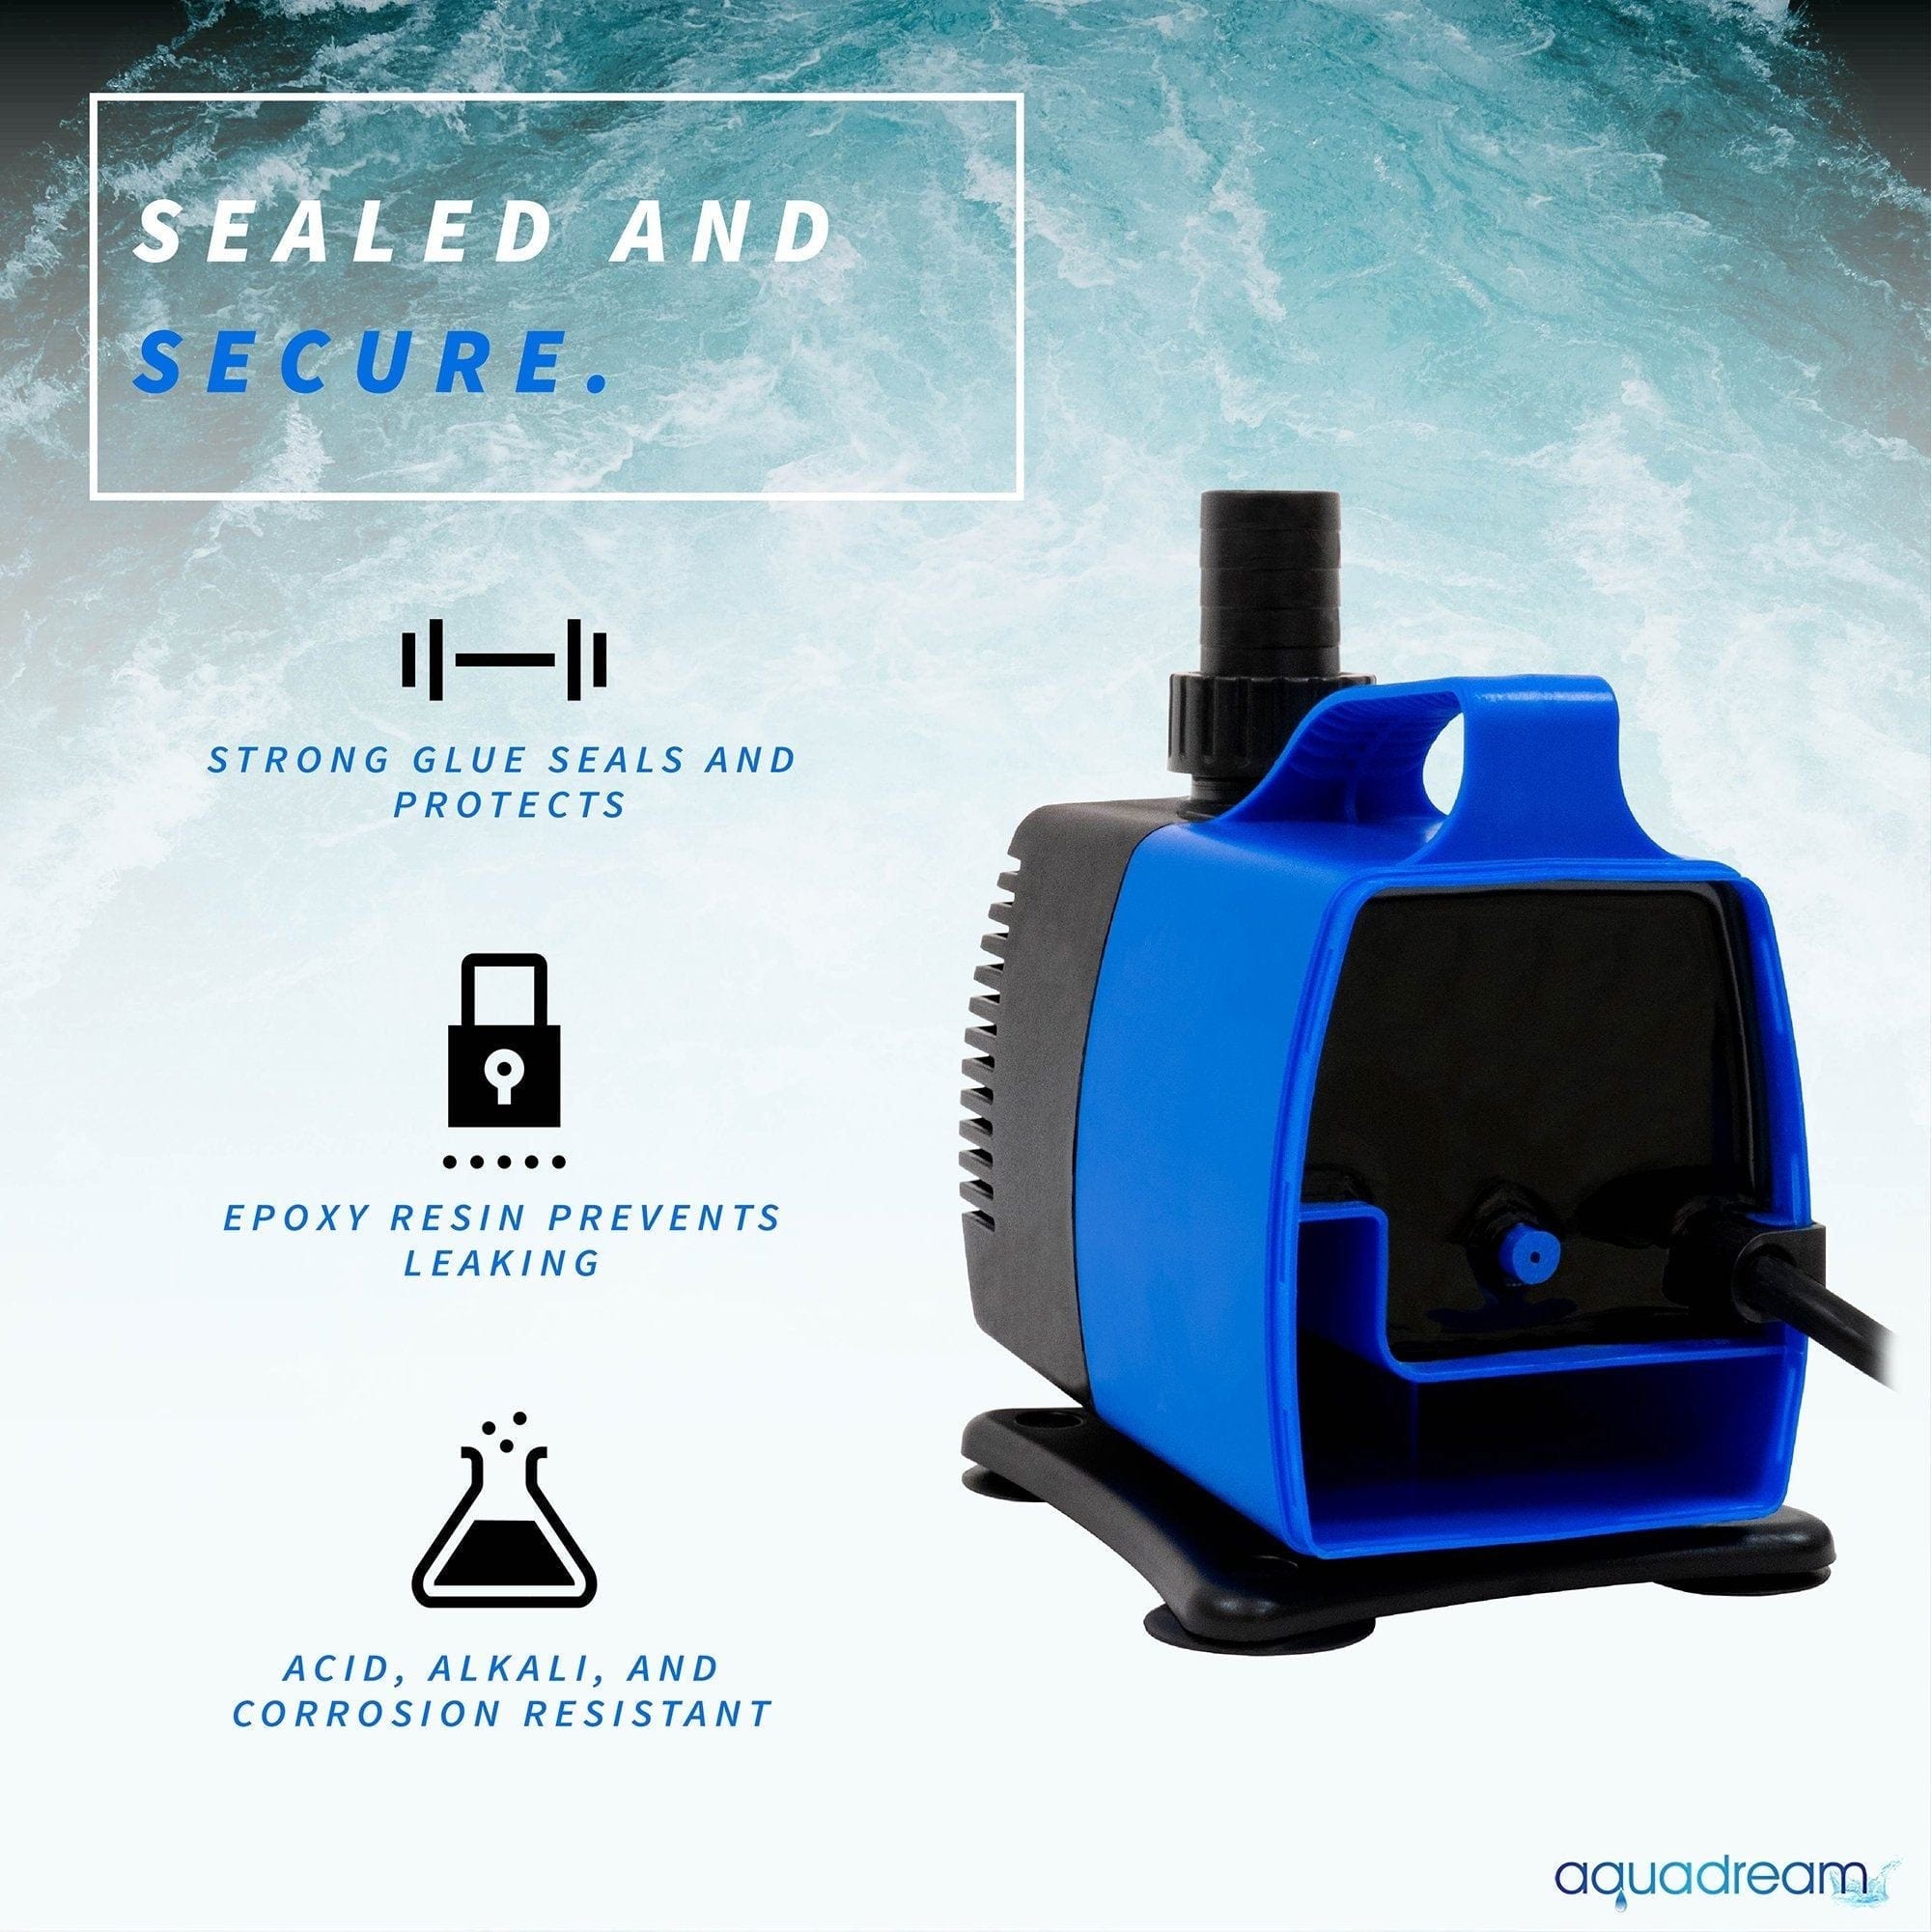 AquaDream Aqua Dream 920 GPH Adjustable Submersible Pump Aquarium Water Treatments